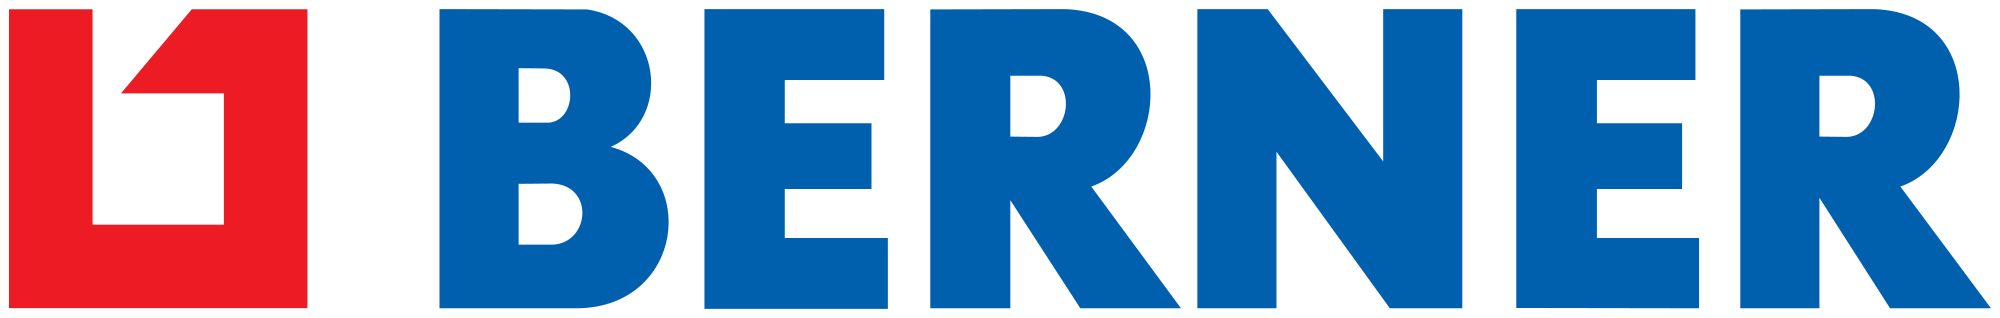 Berner-logo